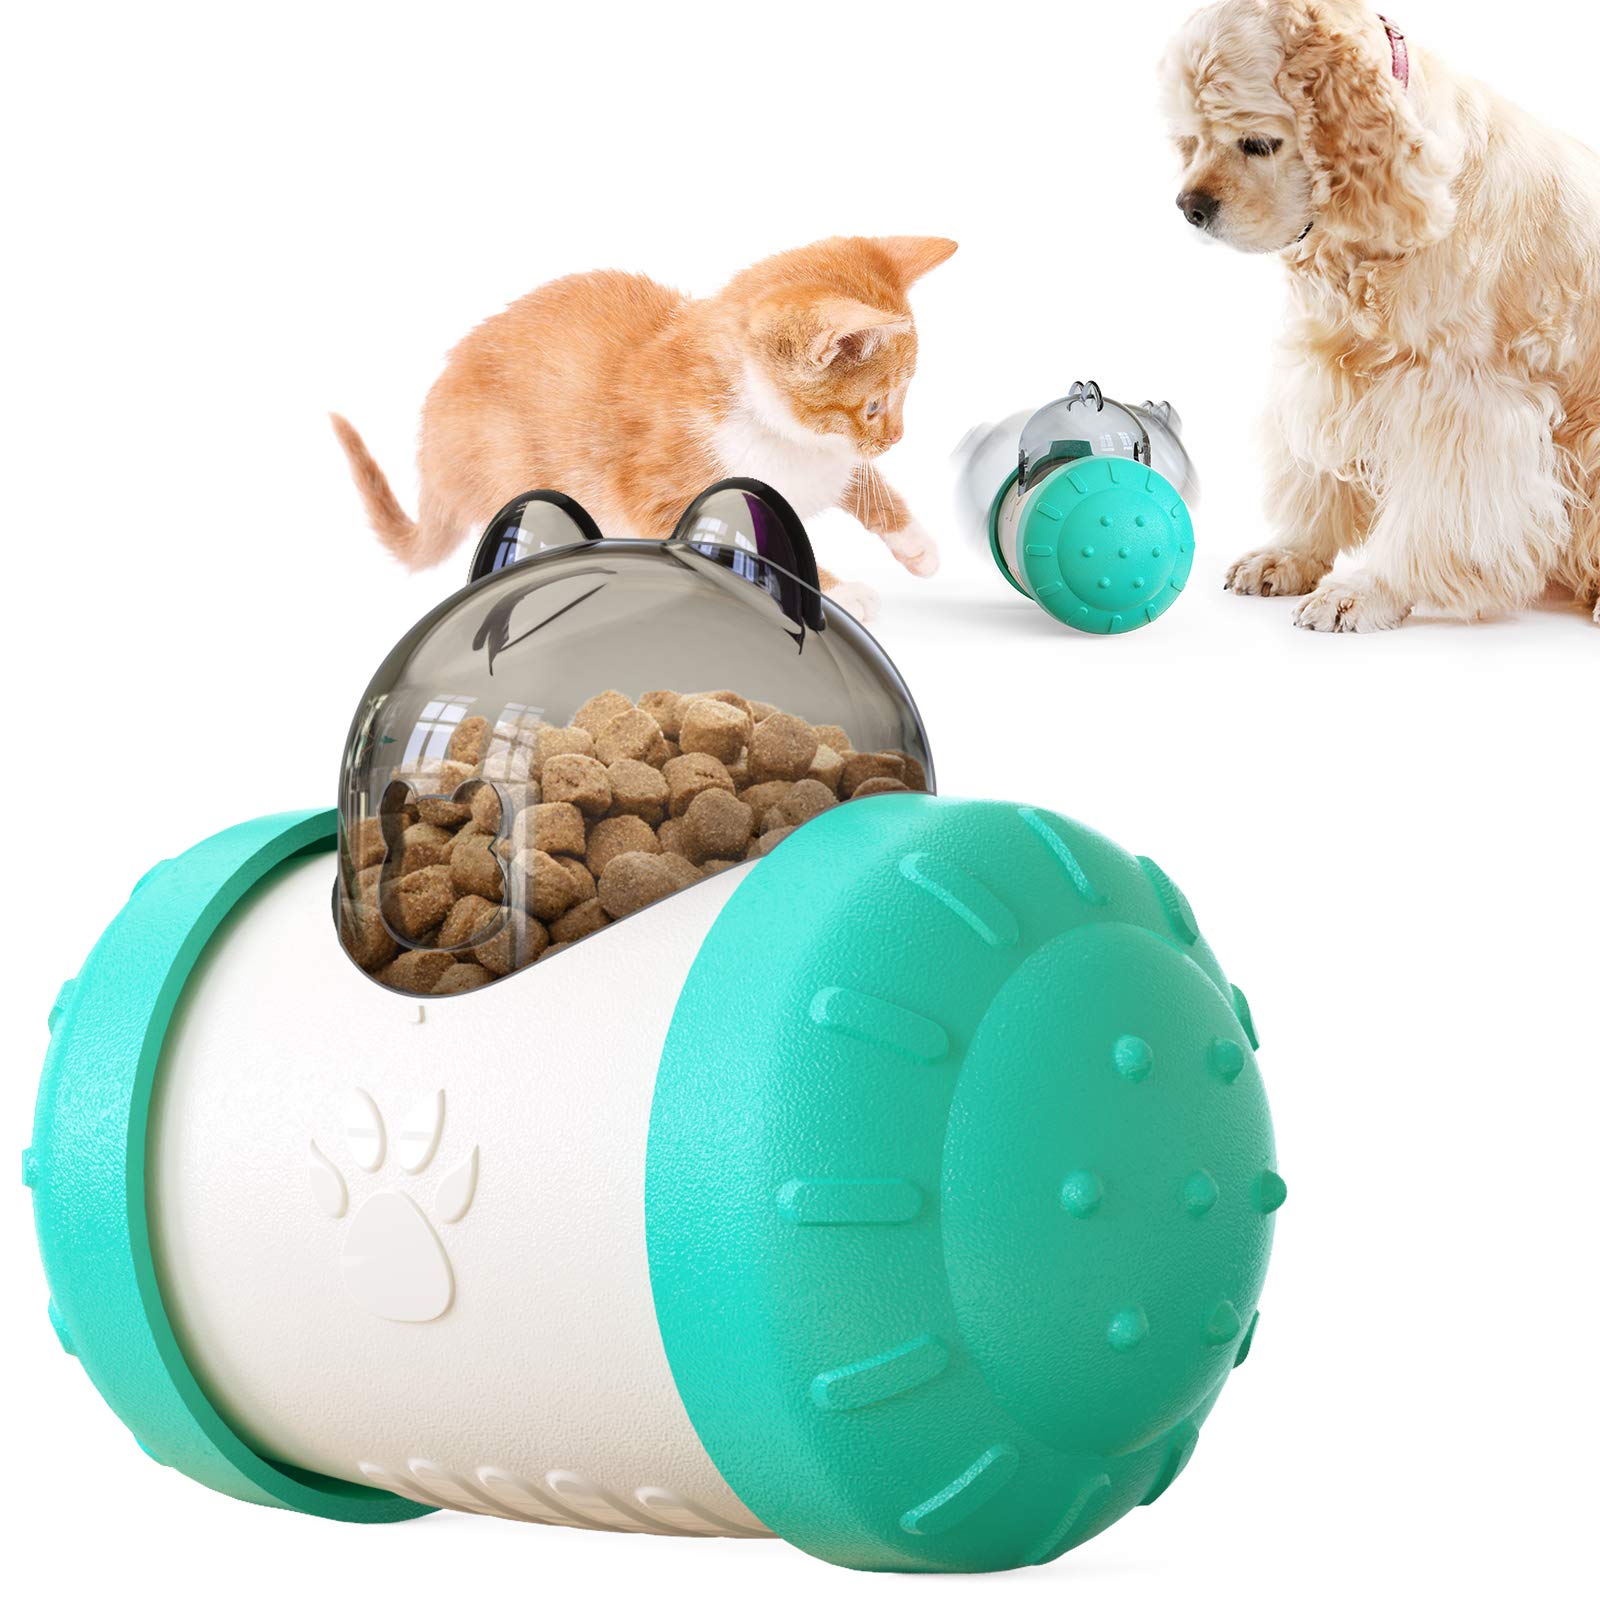 NW Swing Bear Lecky Spielzeug für Hund und Katze Hund Slow Feeder Futterspender Spielzeug Hundespielzeug Hund Puzzle Spielzeug Katzenspielzeug (Türkis)